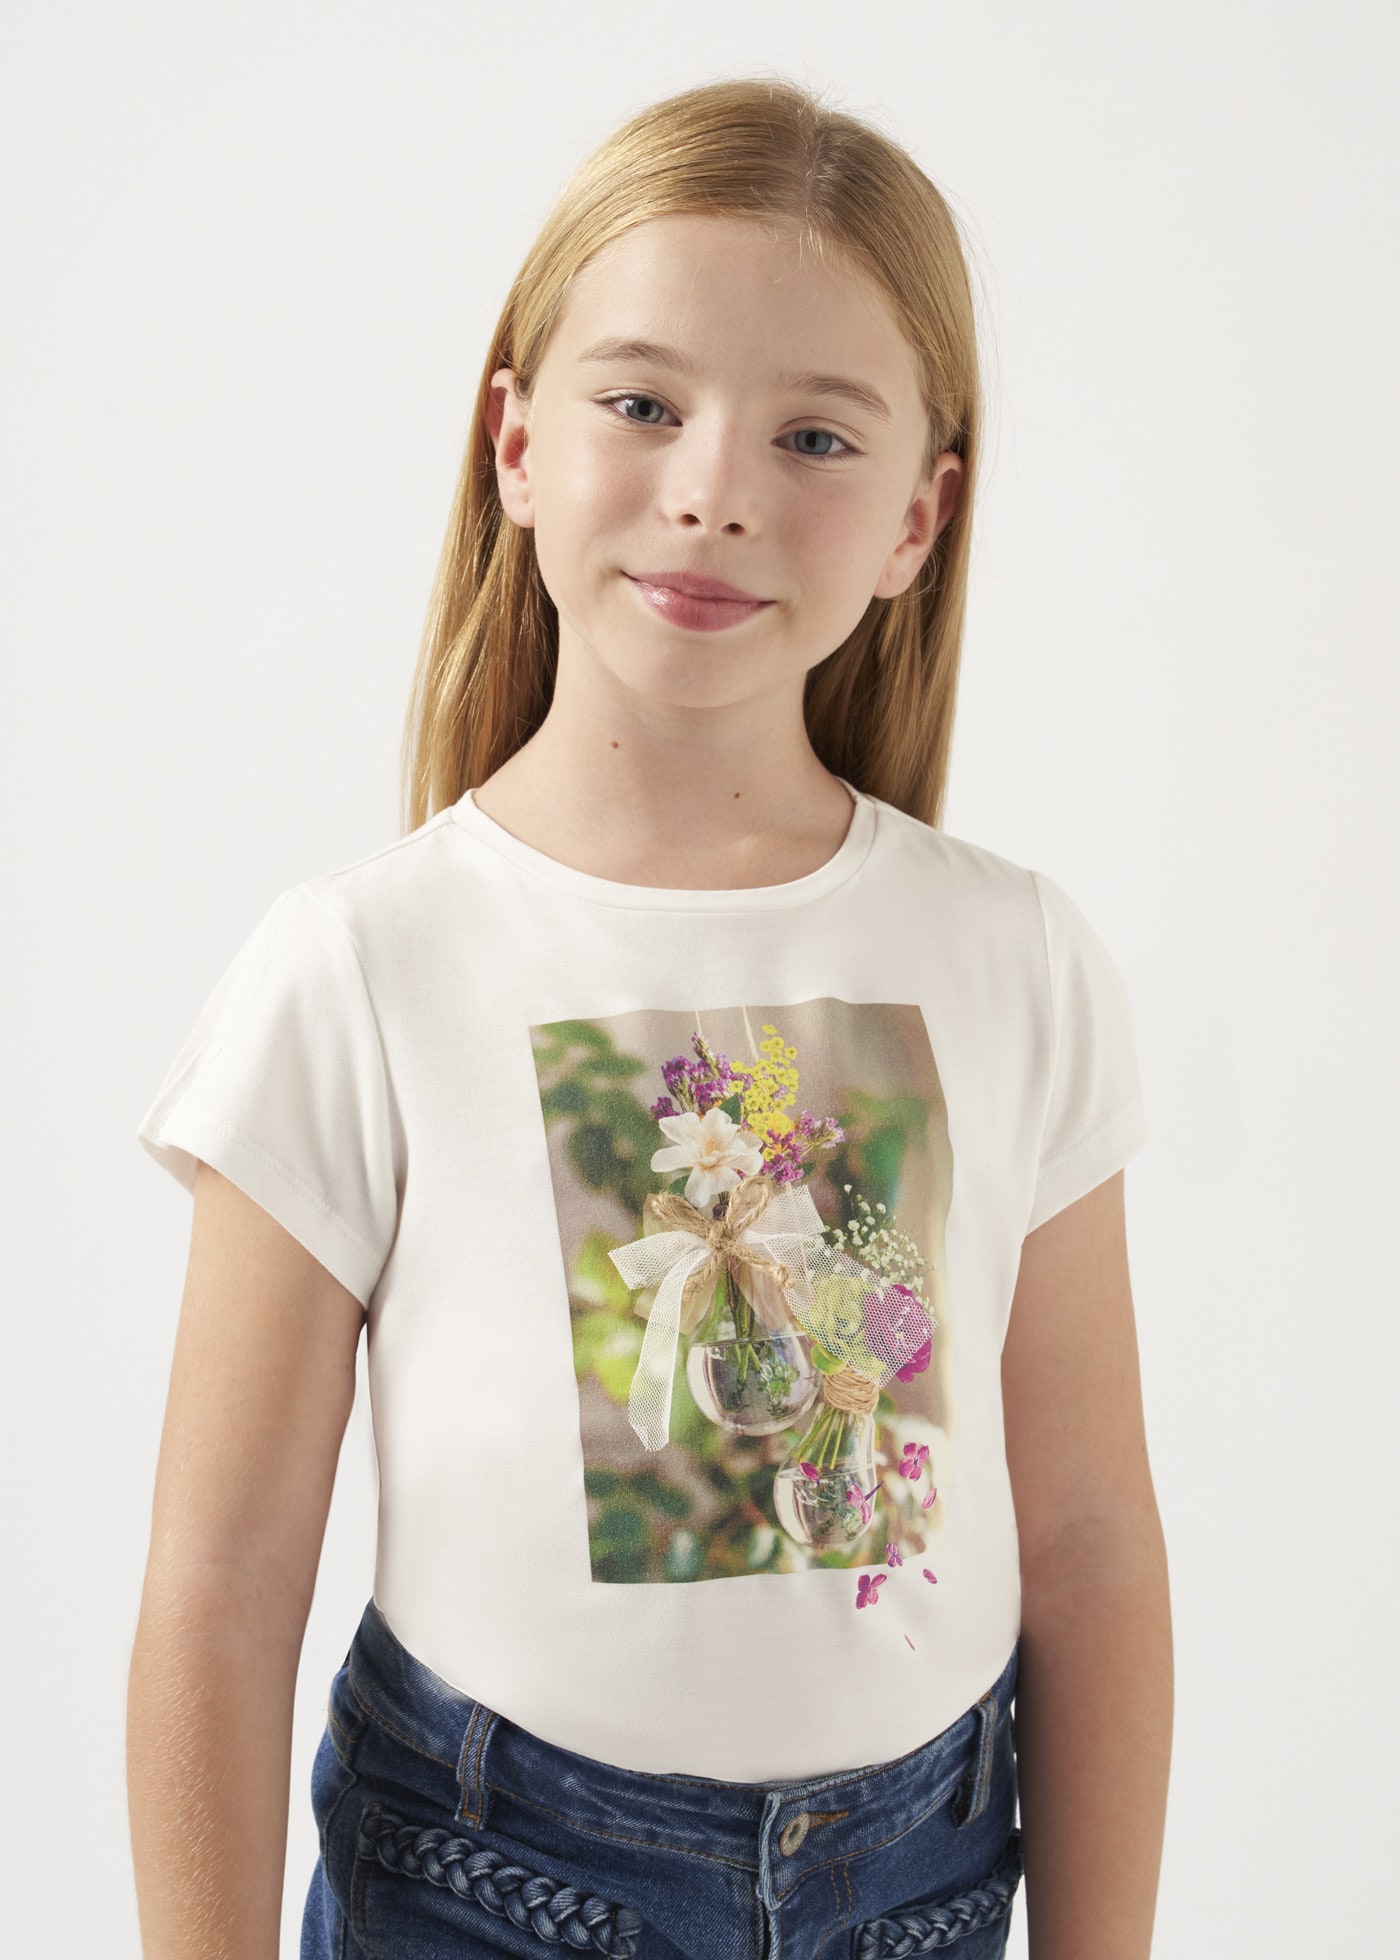 Maglietta stampa fiori ragazza